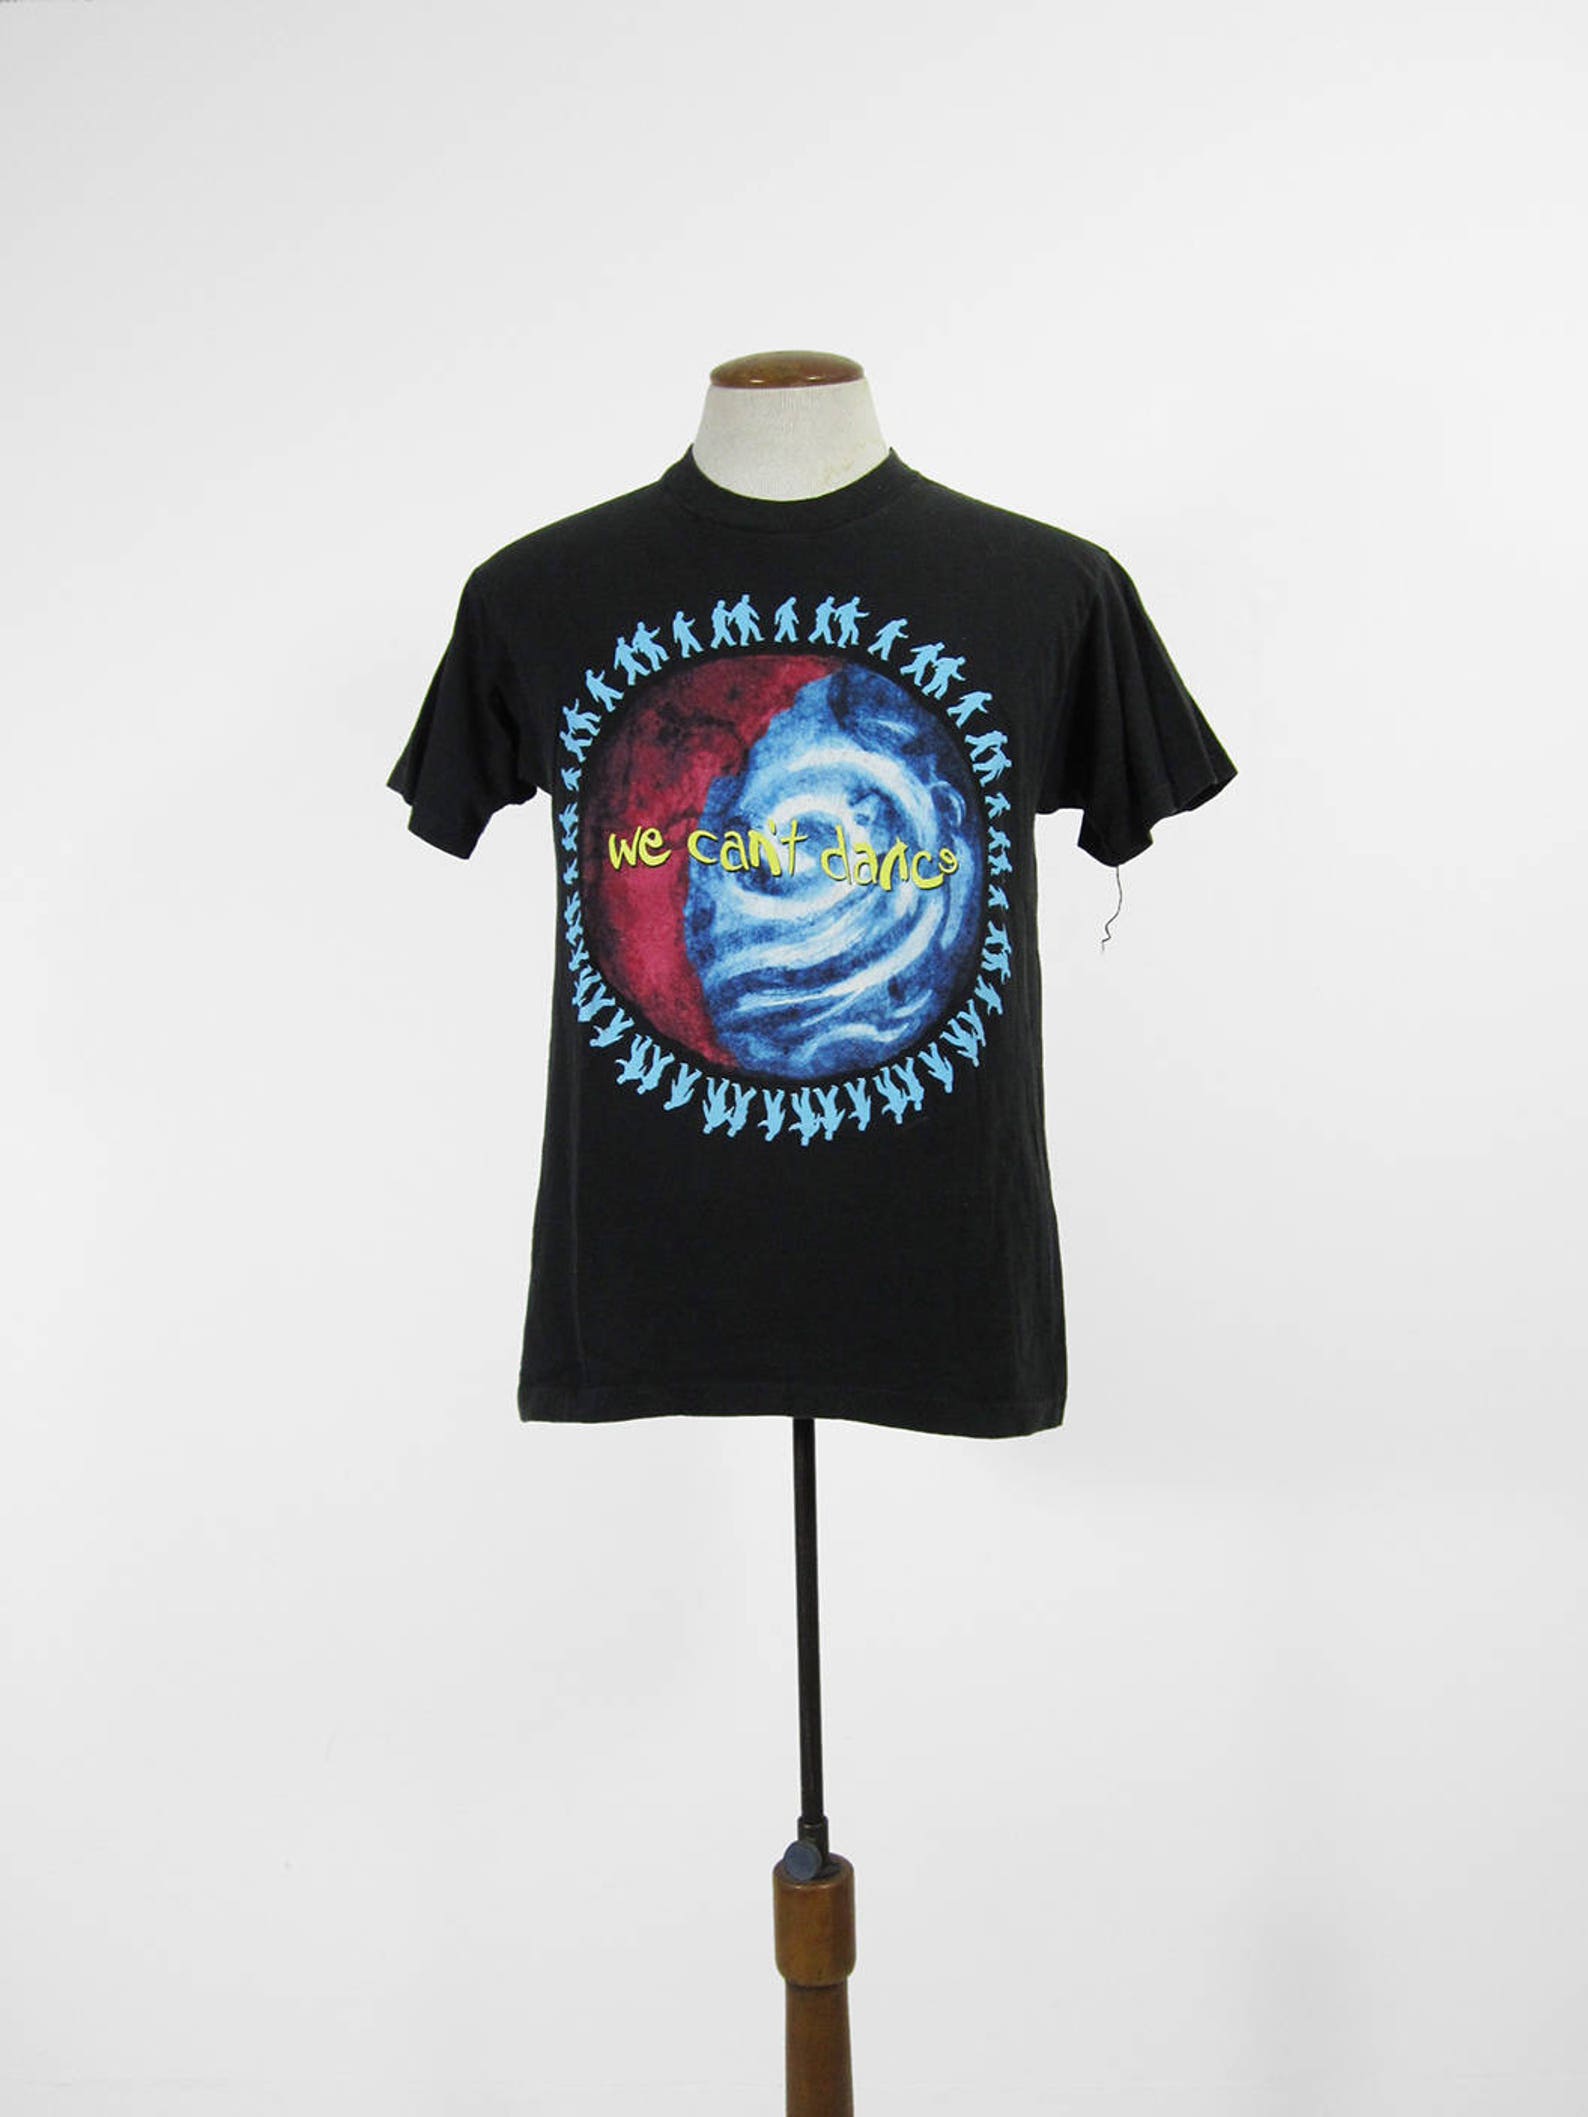 Vintage Genesis T-shirt We Can't Dance 1992 Black Tour | Etsy